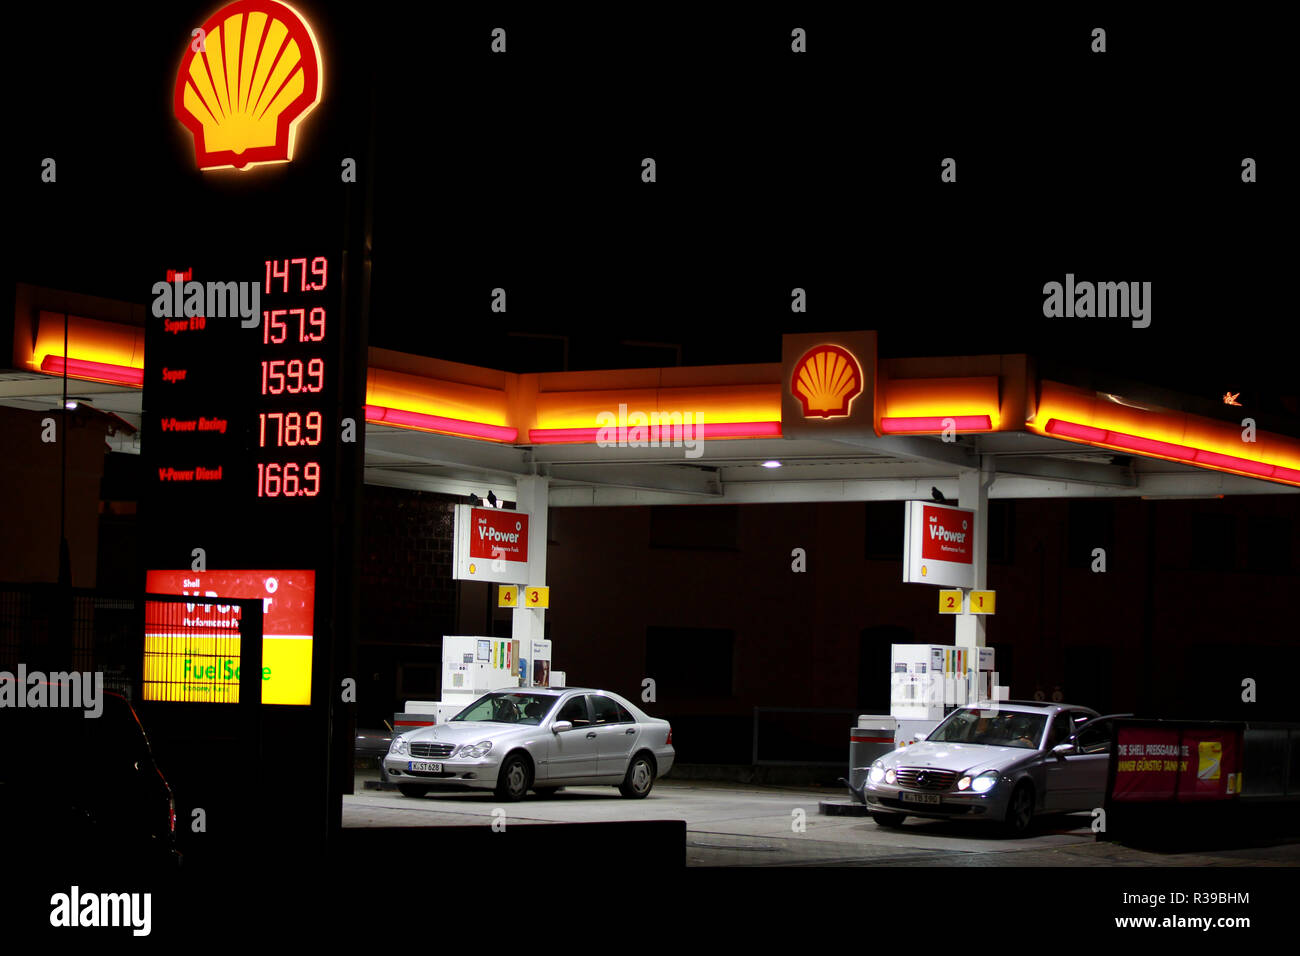 Una estación de gasolina Shell precio signo es visto en Colonia, Alemania. Precios de combustible diesel están aumentando casi tan alta como super precios del combustible. Los precios de la gasolina siguen siendo elevados en Alemania después de alcanzar niveles récord recientemente. Foto de stock